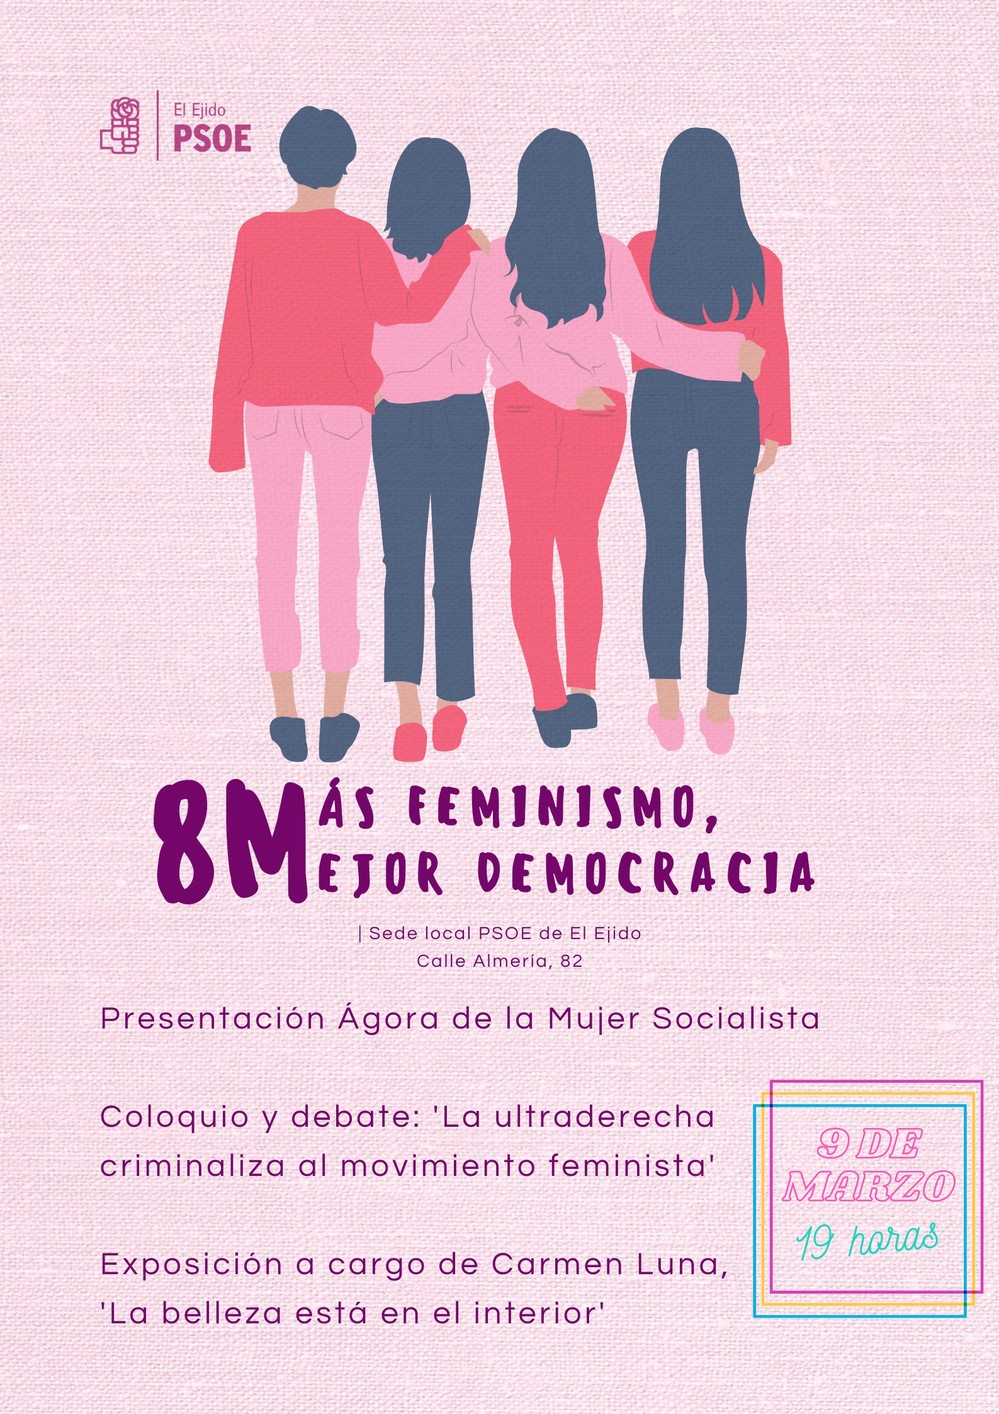 El PSOE de El Ejido reivindica el feminismo con un acto central en su sede con motivo del 8M bajo el lema, ‘Más Feminismo, Mejor Democracia’